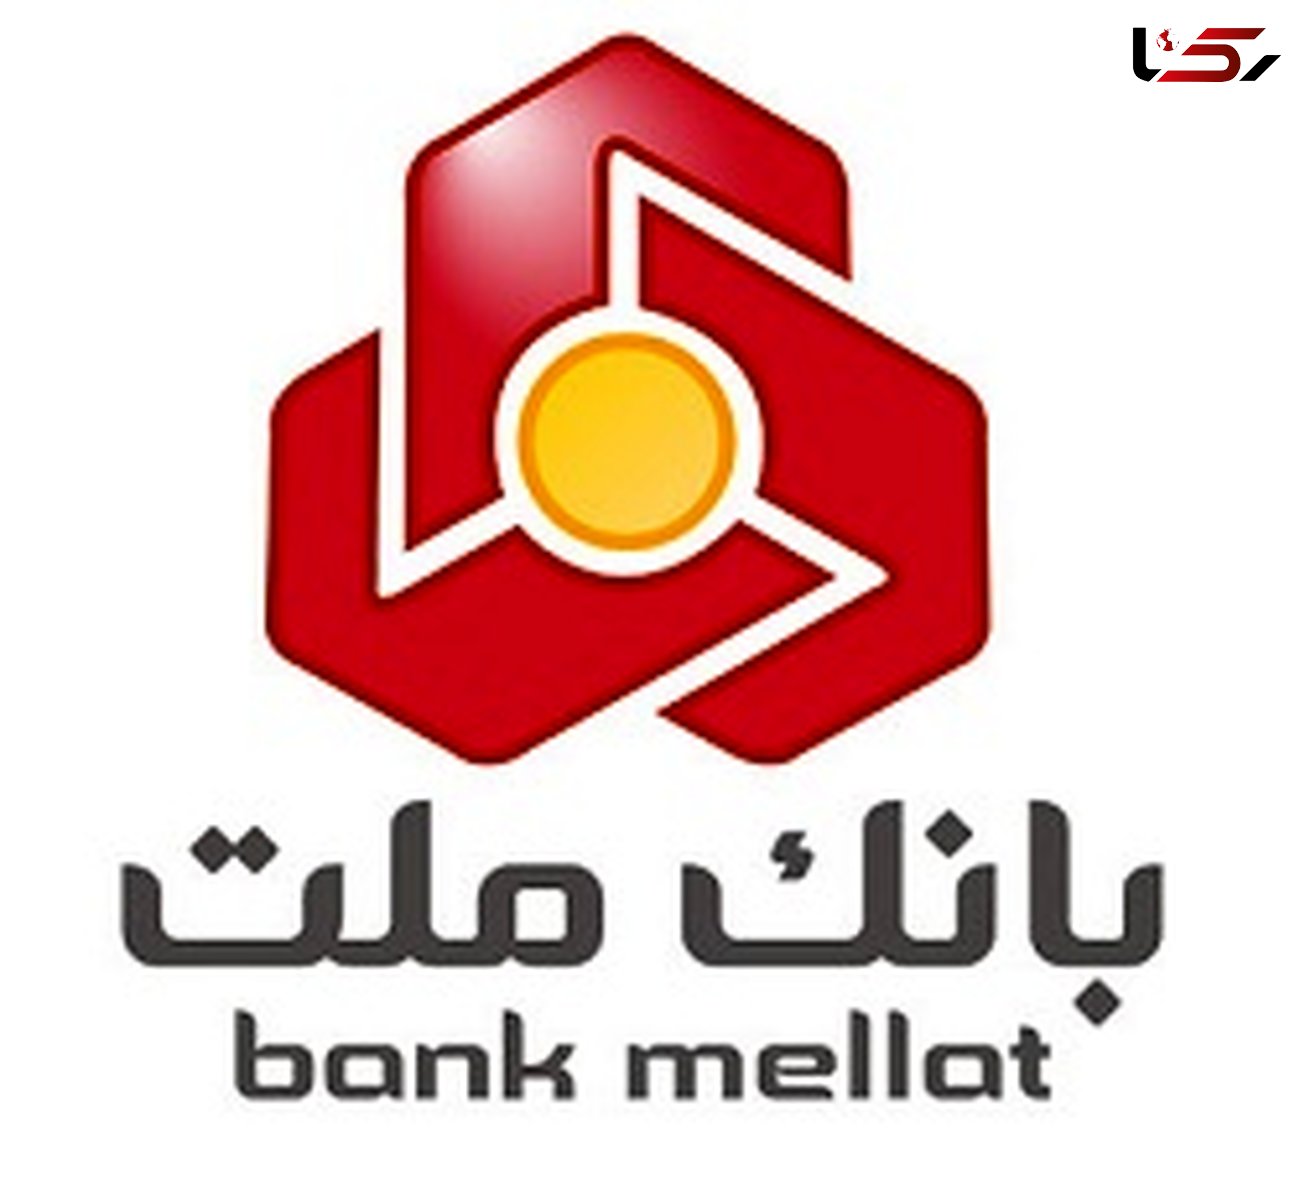 بانک ملت بدون هماهنگی با مشتری حساب ها را مسدود کرد